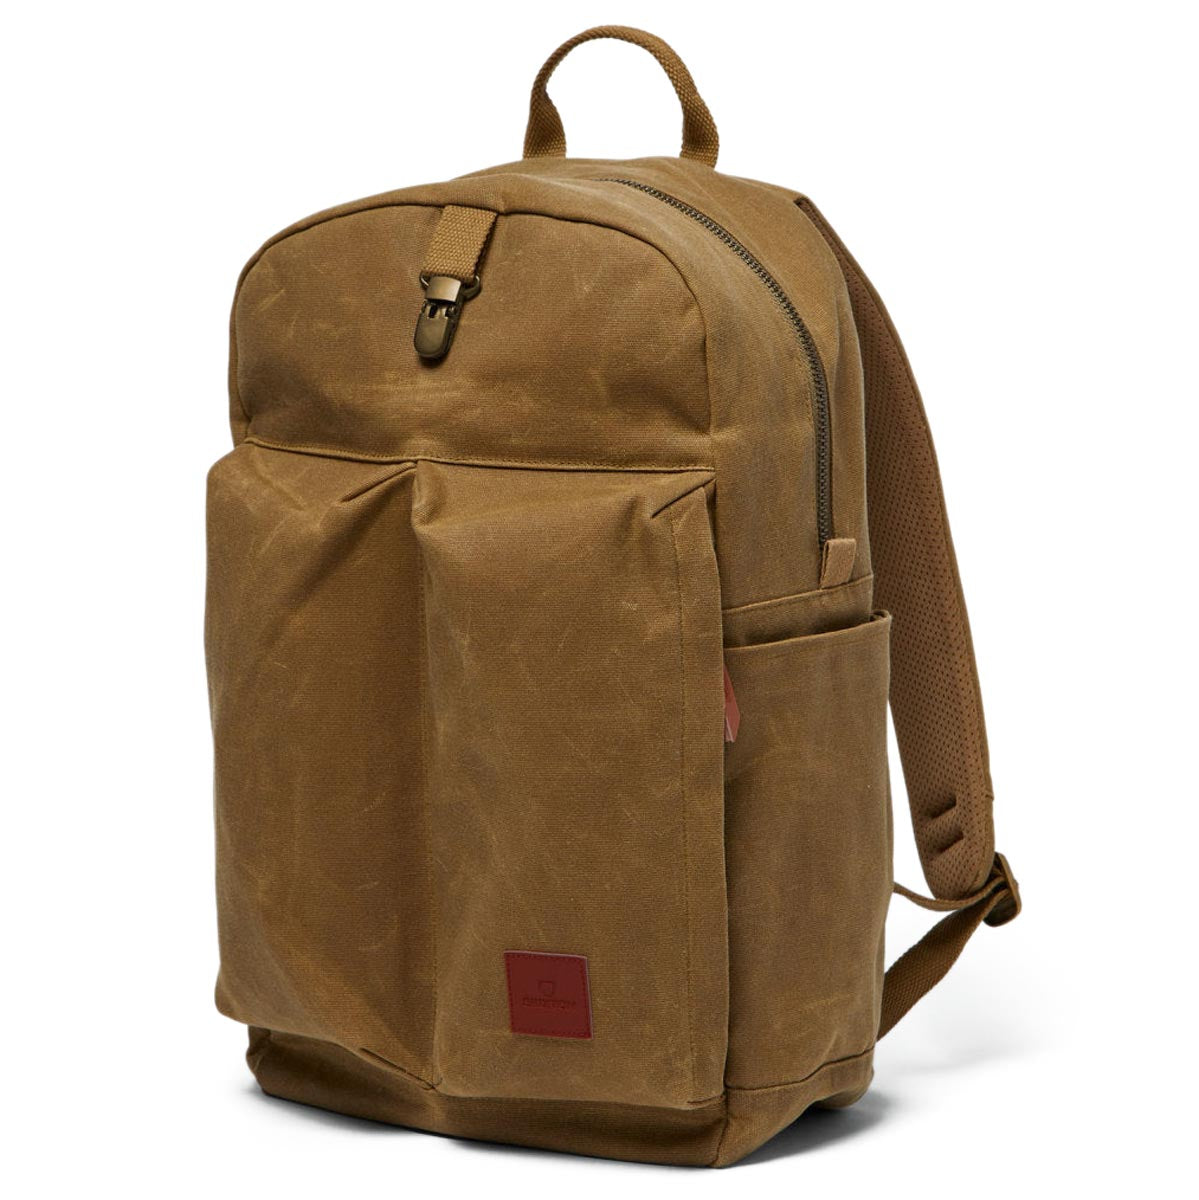 Brixton Traveler Backpack - Olive Brown image 3